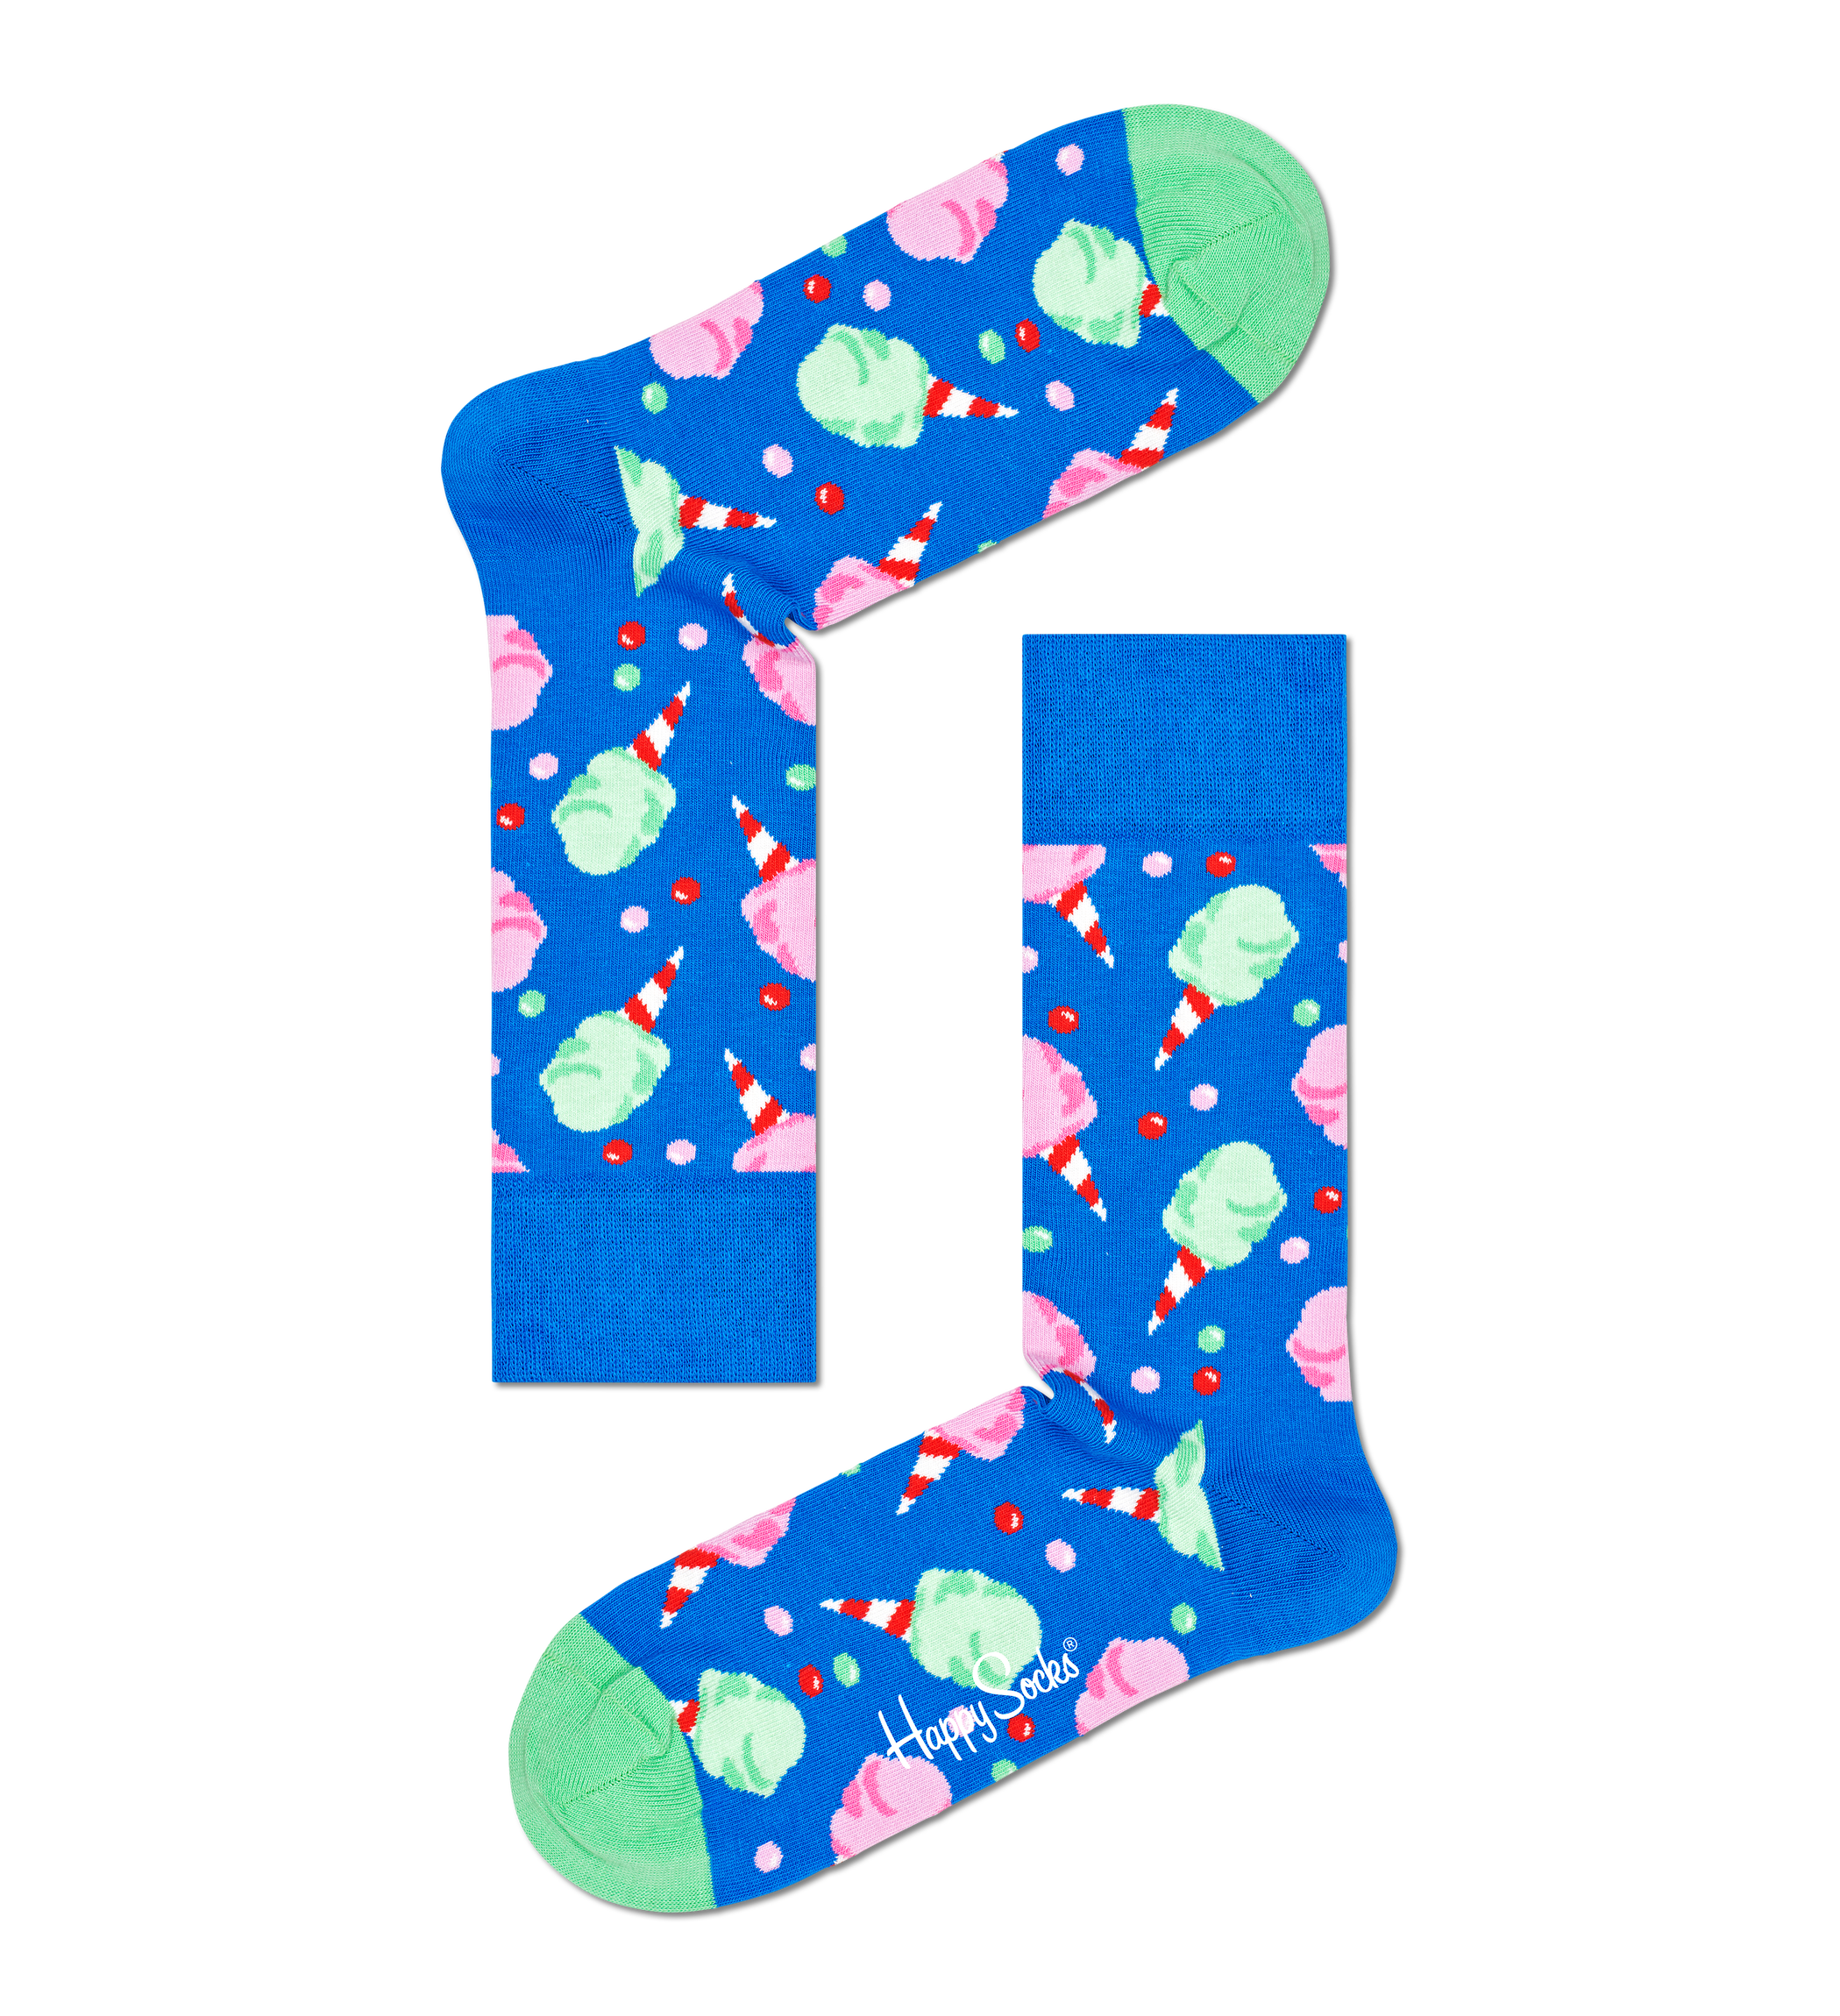 Modré ponožky Happy Socks s cukrovou vatou, vzor Cotton Candy